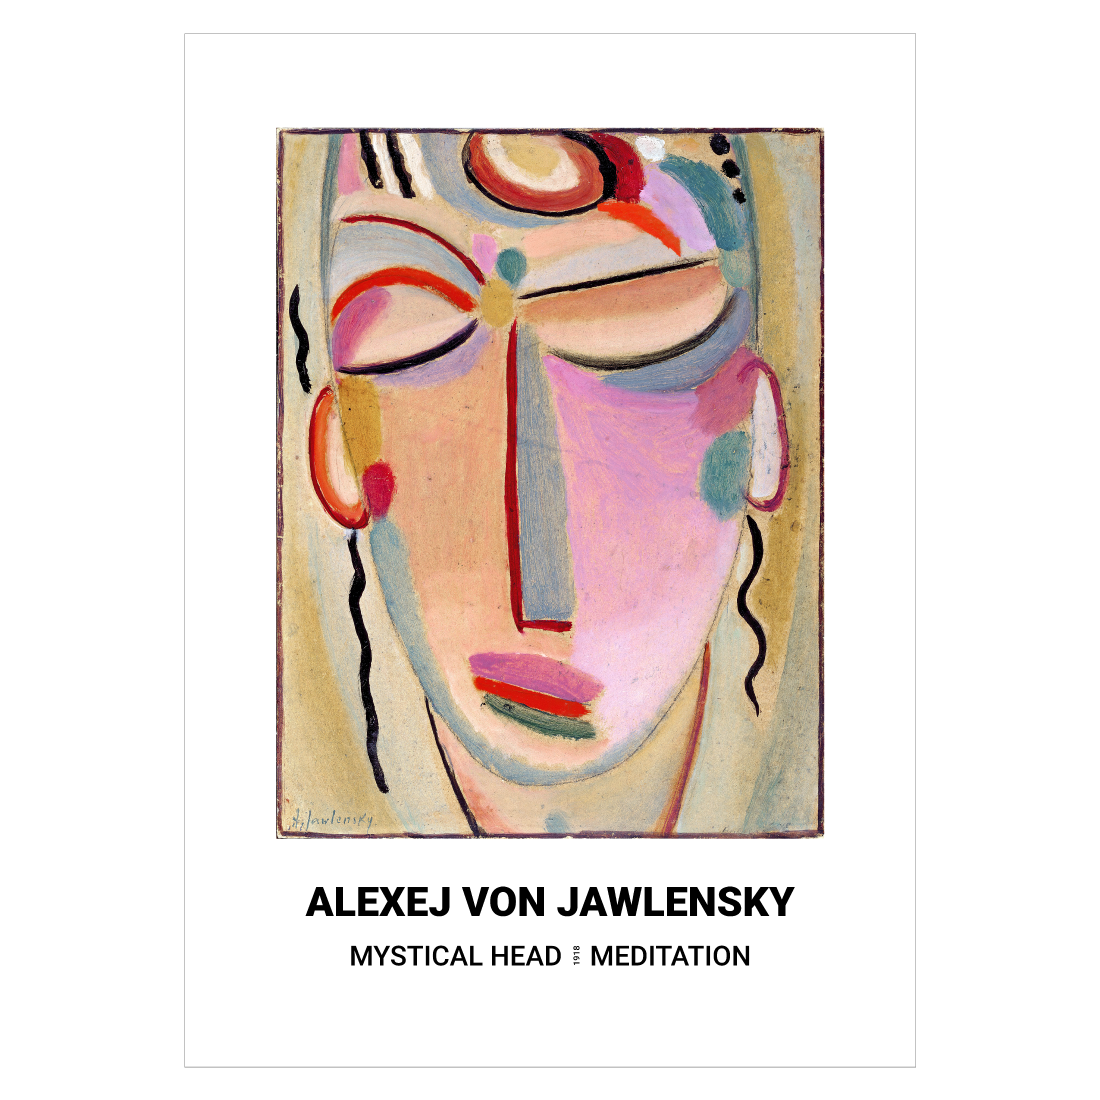 Kunstplakat med Alexej von Jawlensky "Mystical Head Meditation"